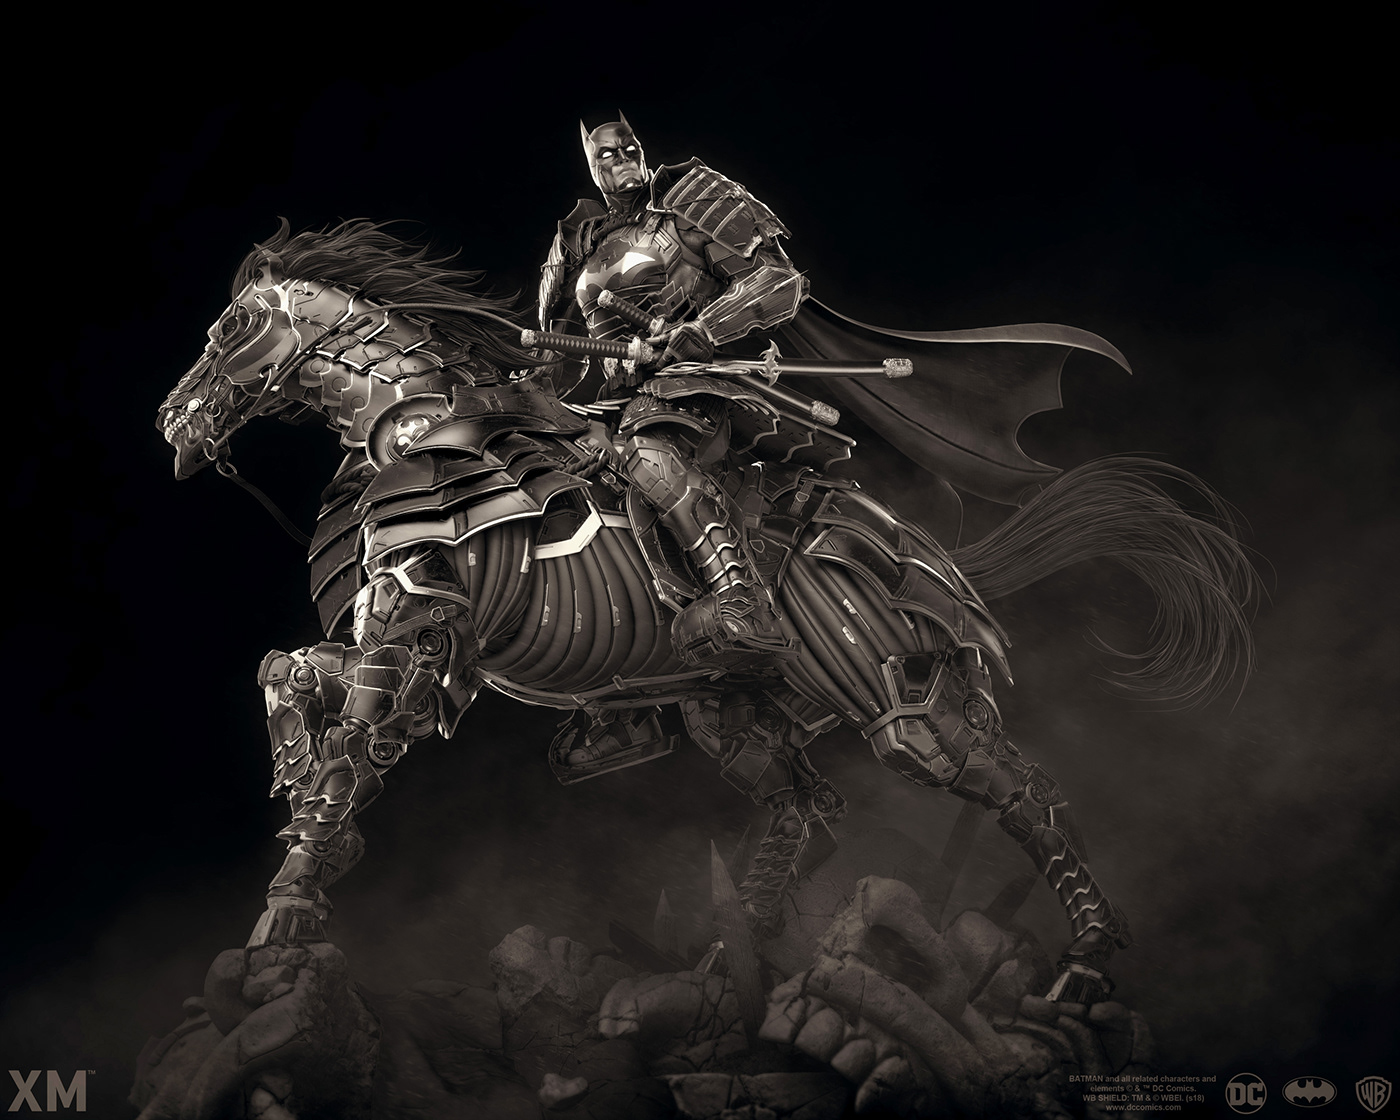 batman shogun japan Armor samurai ninja horse warrior army